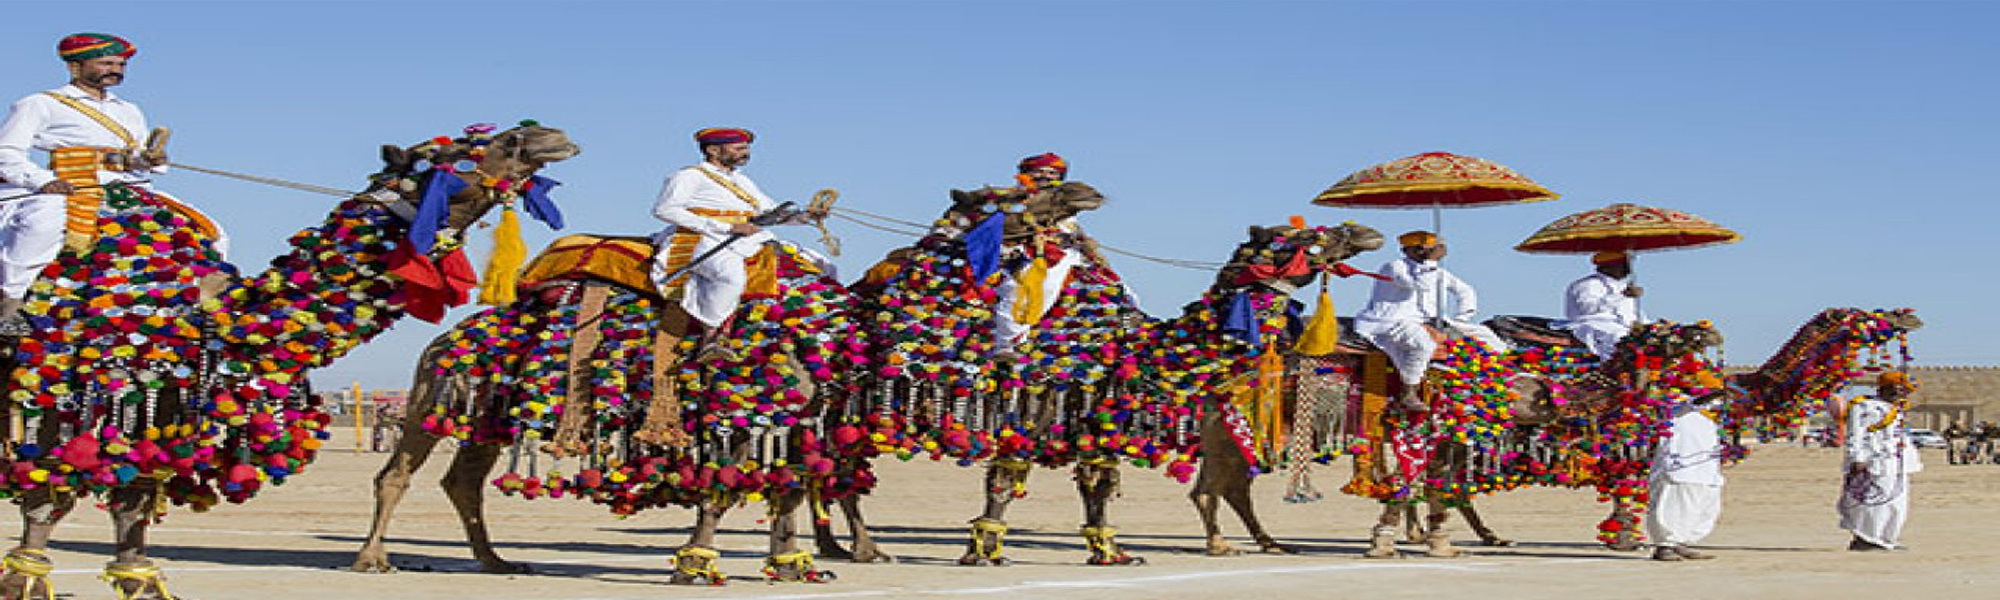 Desert Festival Budget Tours in Rajasthan